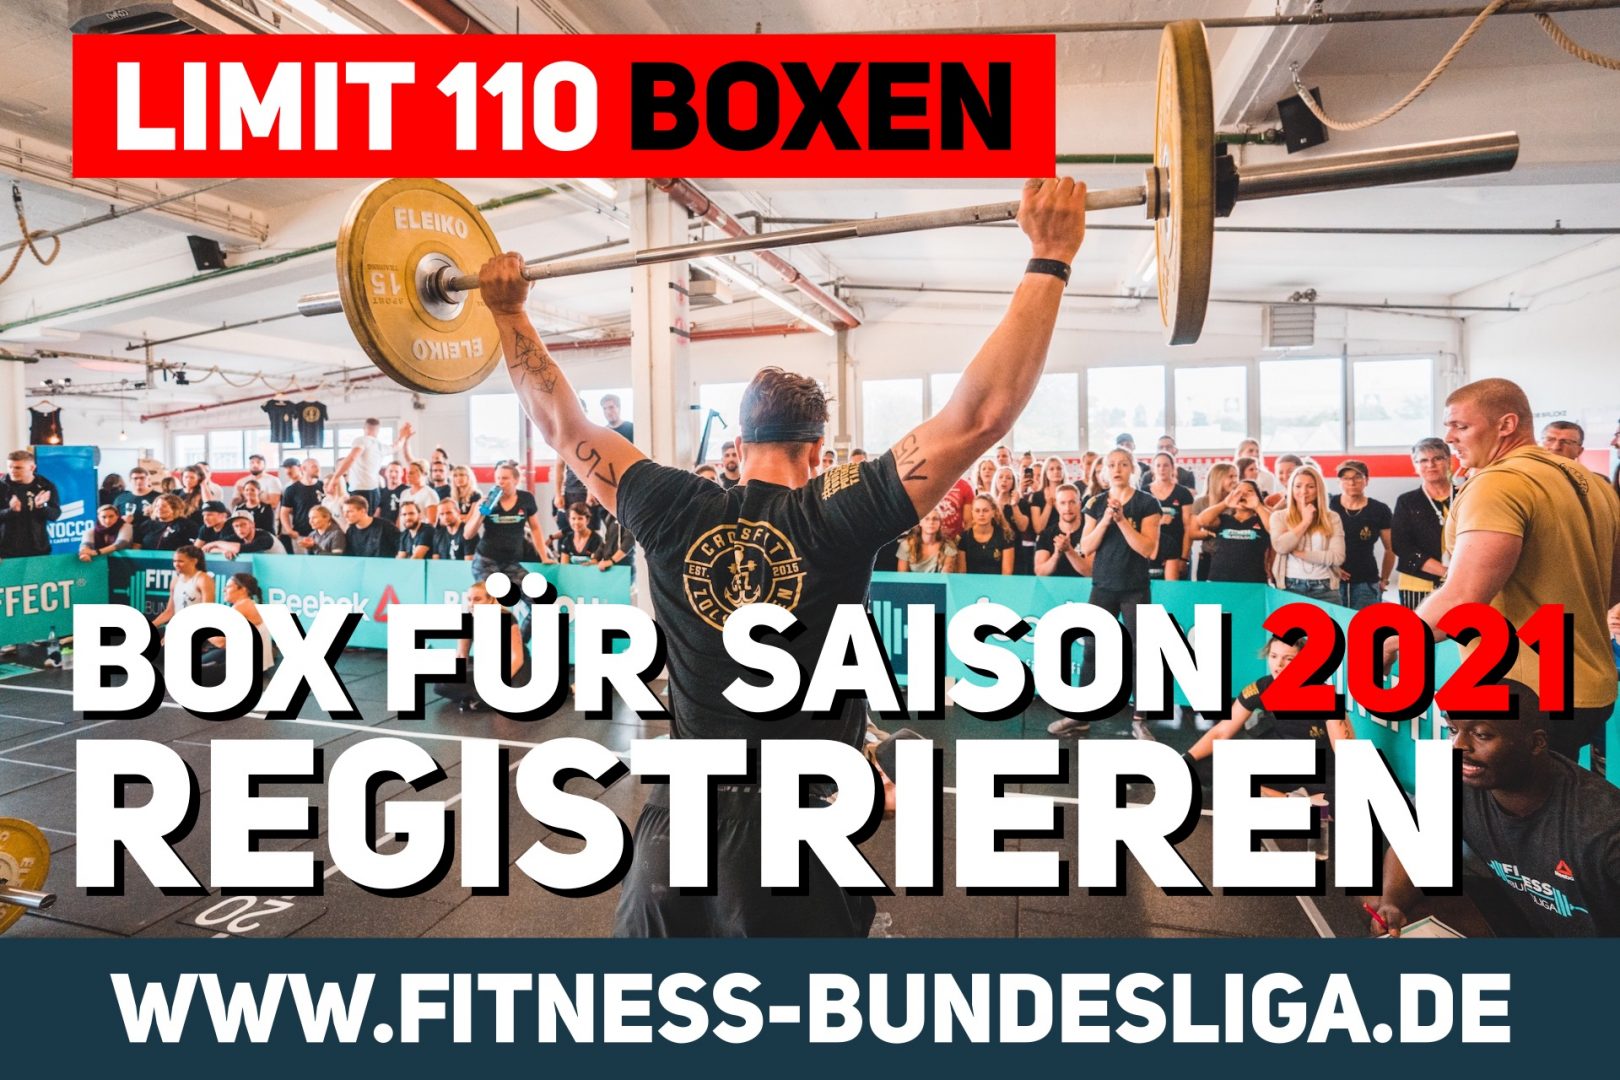 Fitness Bundesliga – Boxen für die Saison 2022/2023 registrieren!